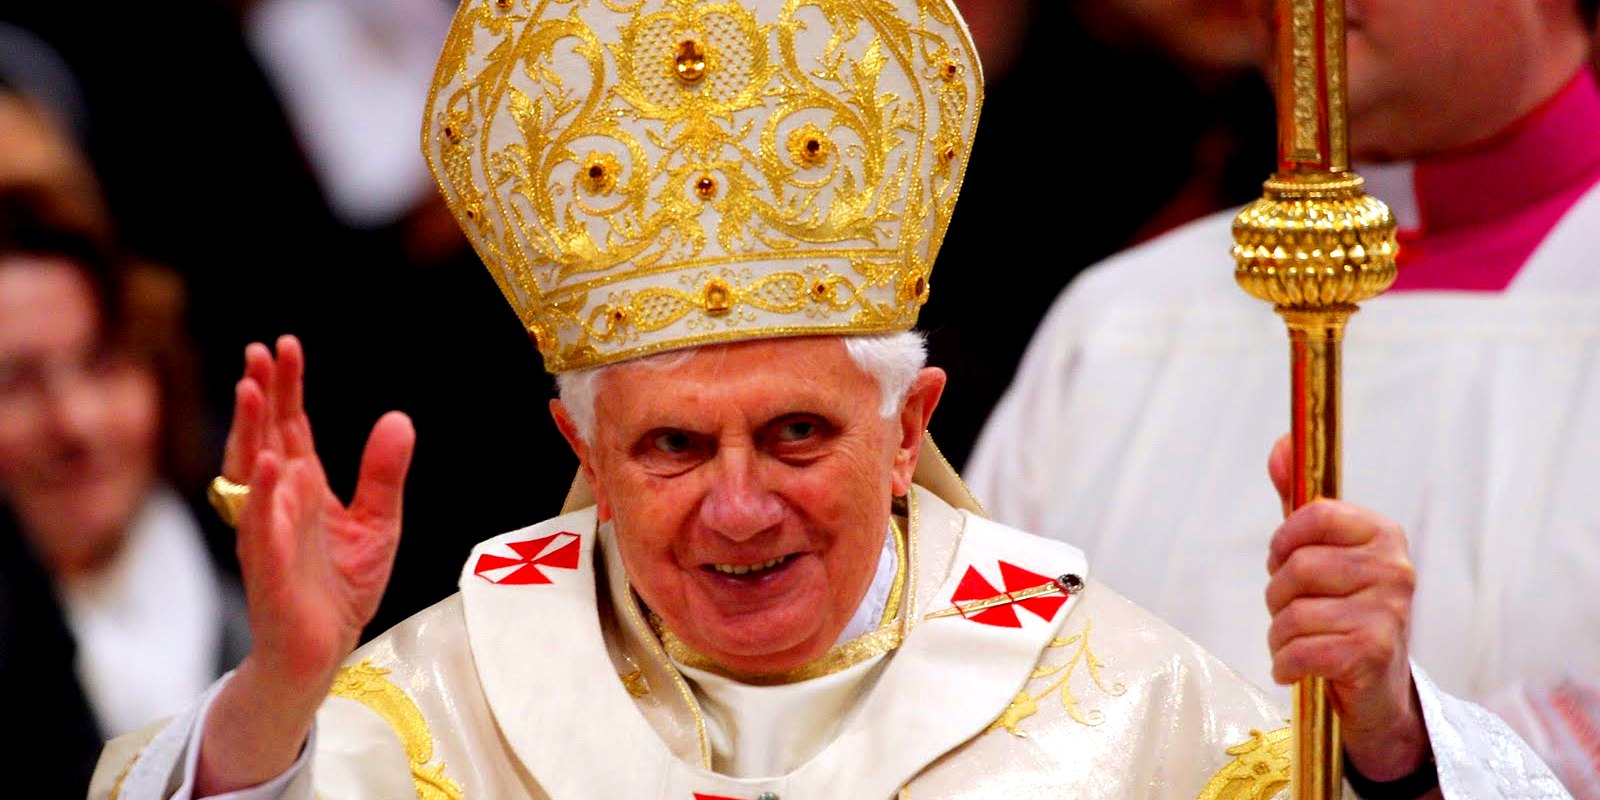  La dimissioni del Papa fra salute e profezie: è comunque una grande lezione d’umiltà